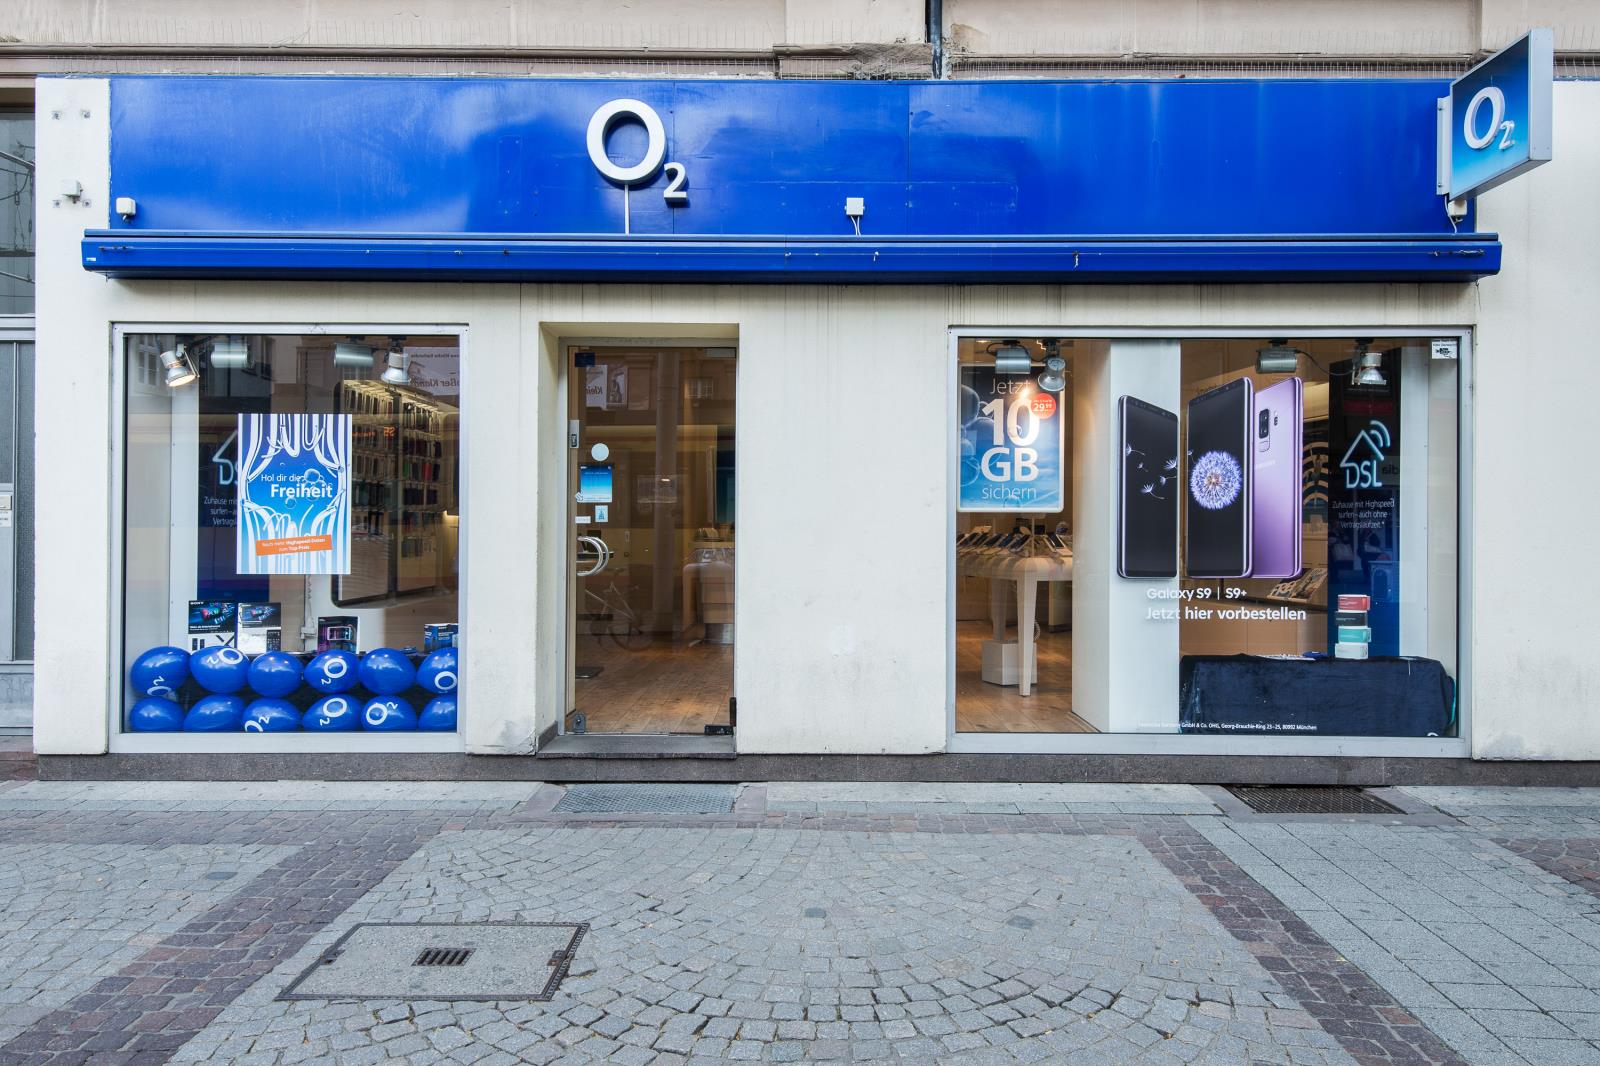 o2 Shop, Kaiserstr. 64 in Karlsruhe